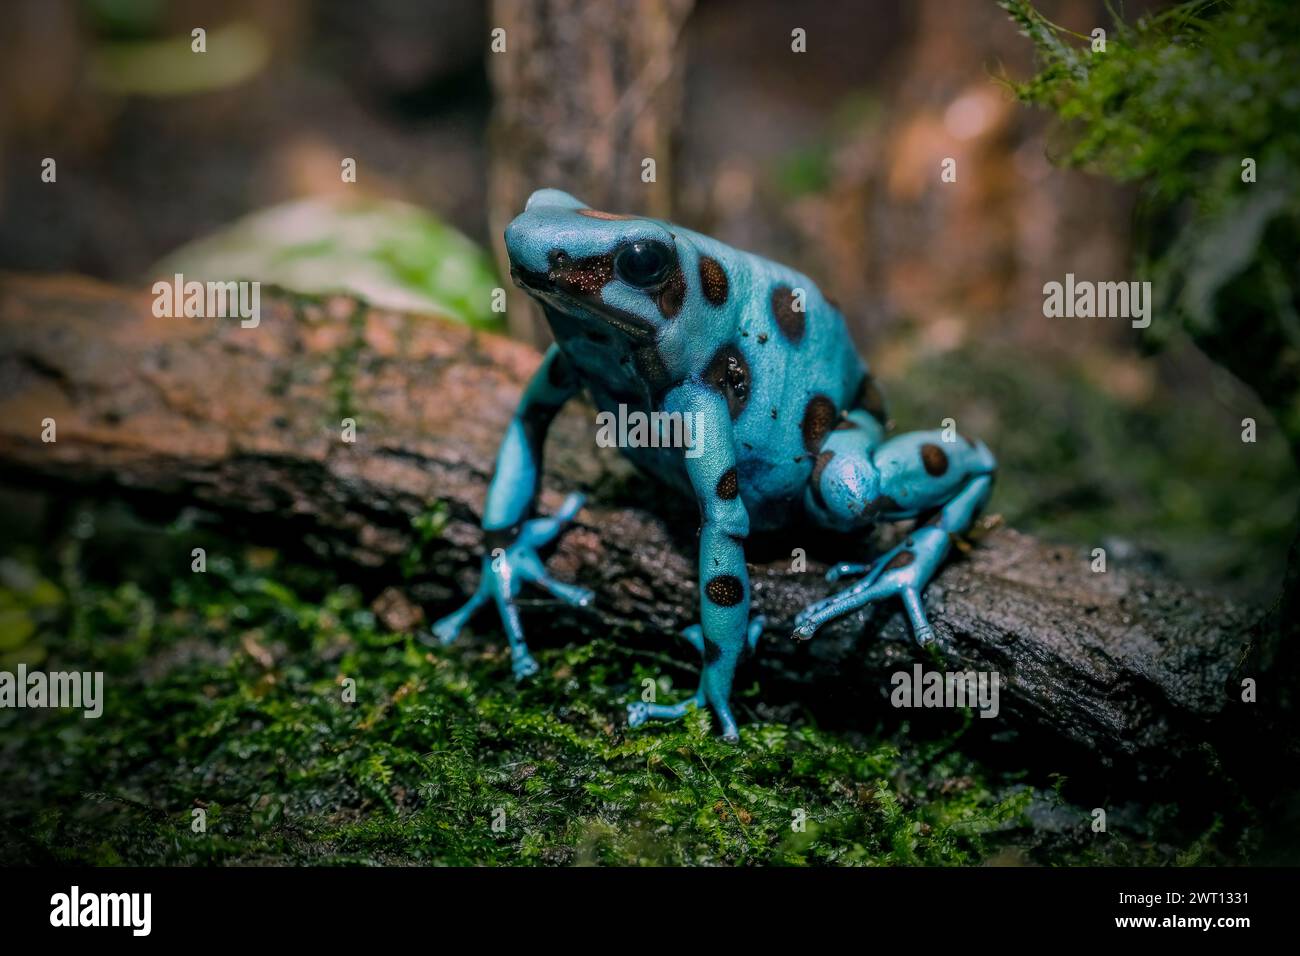 The Dyeing Poison Dart Frog (Dendrobates tinctorius) Stock Photo